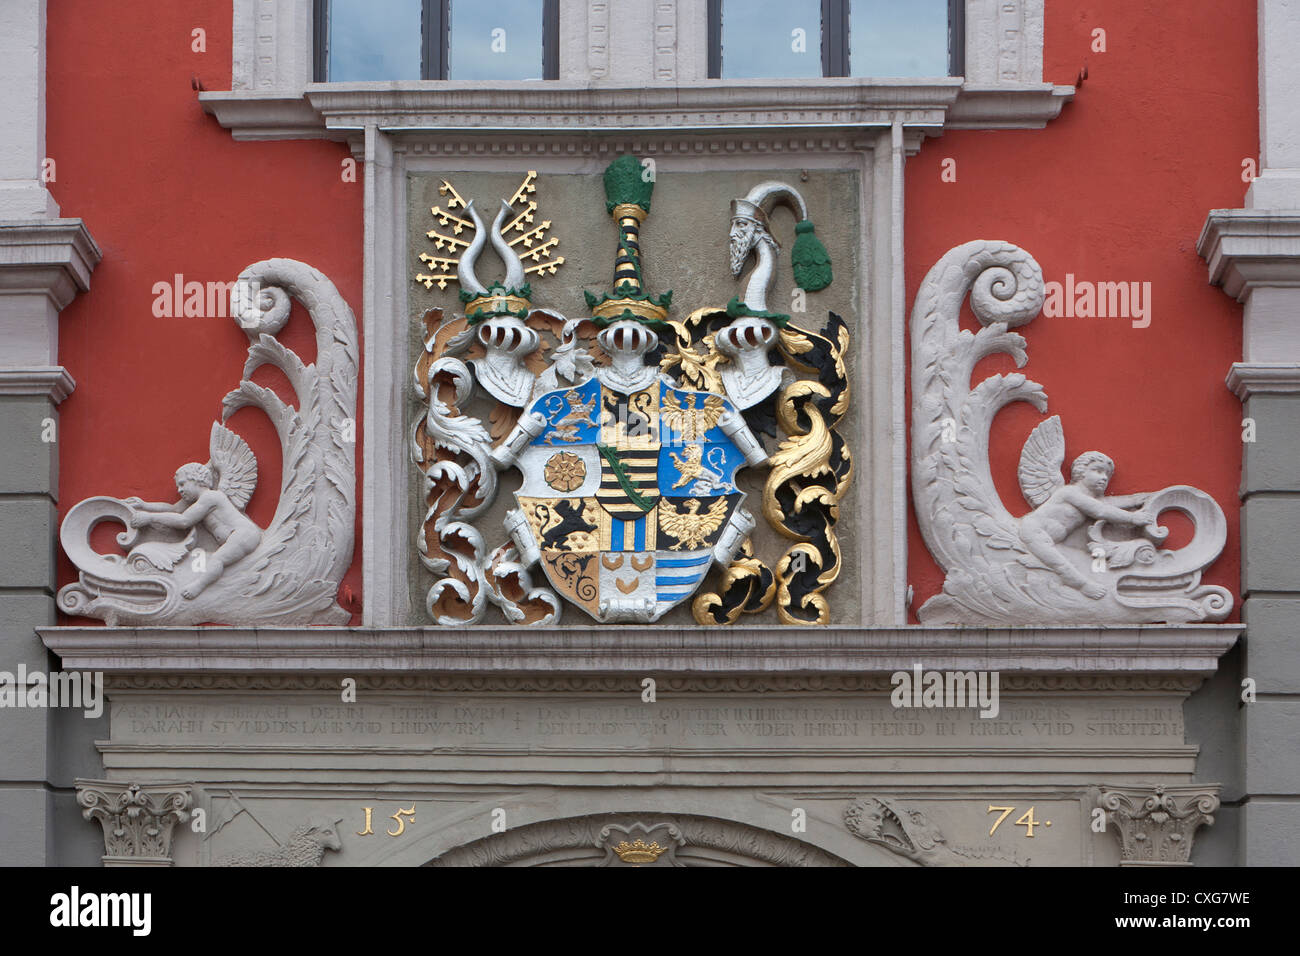 El edificio histórico del ayuntamiento, Gotha, Turingia, Alemania Foto de stock